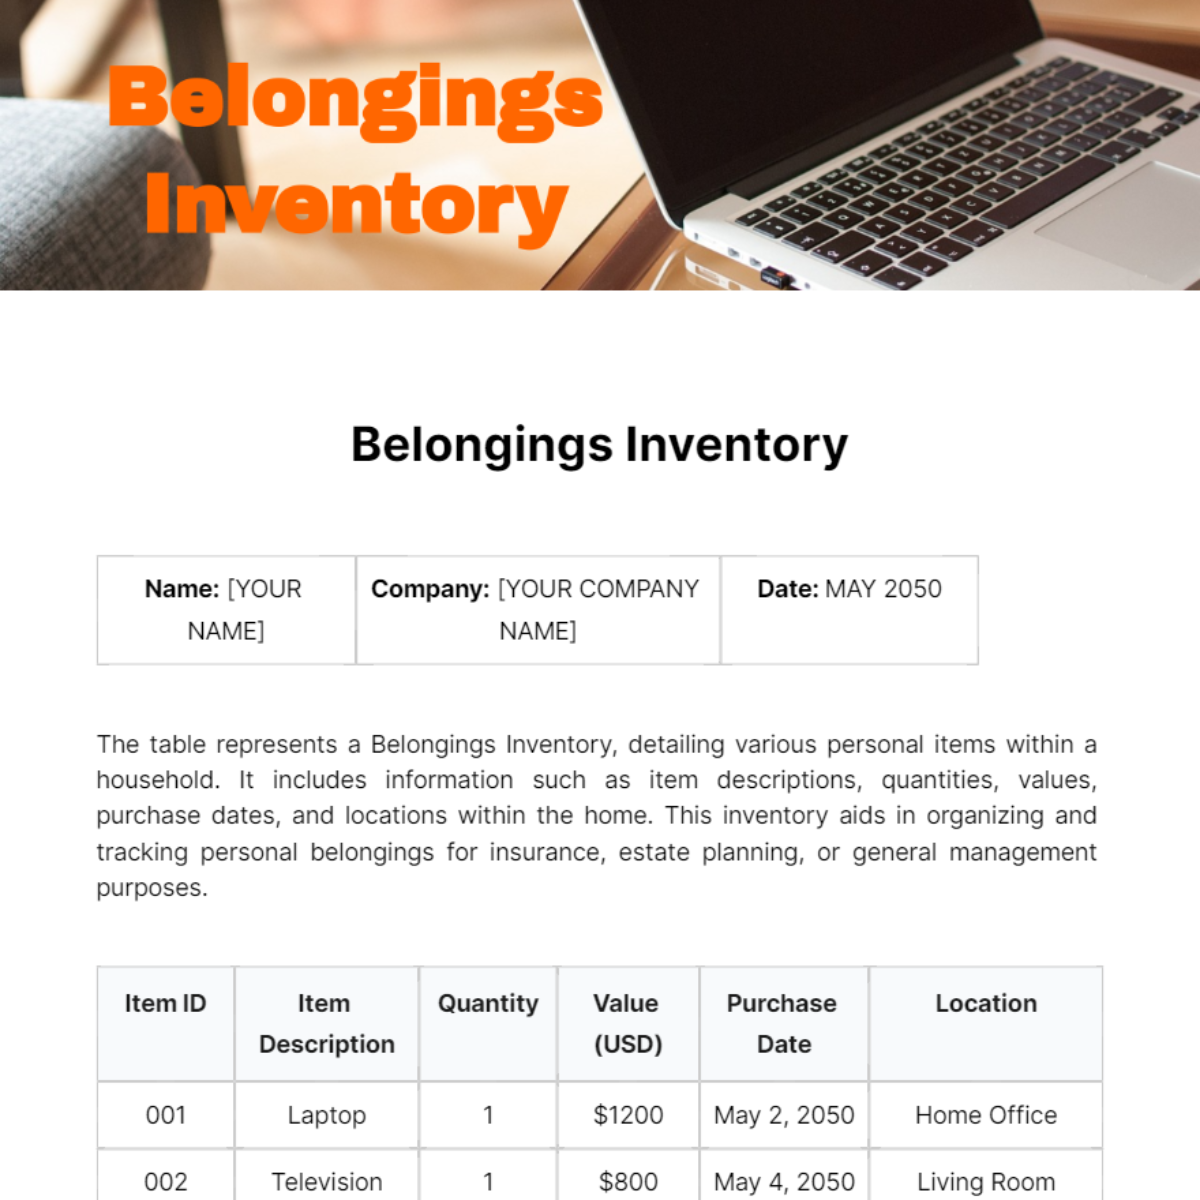 Belongings Inventory Template